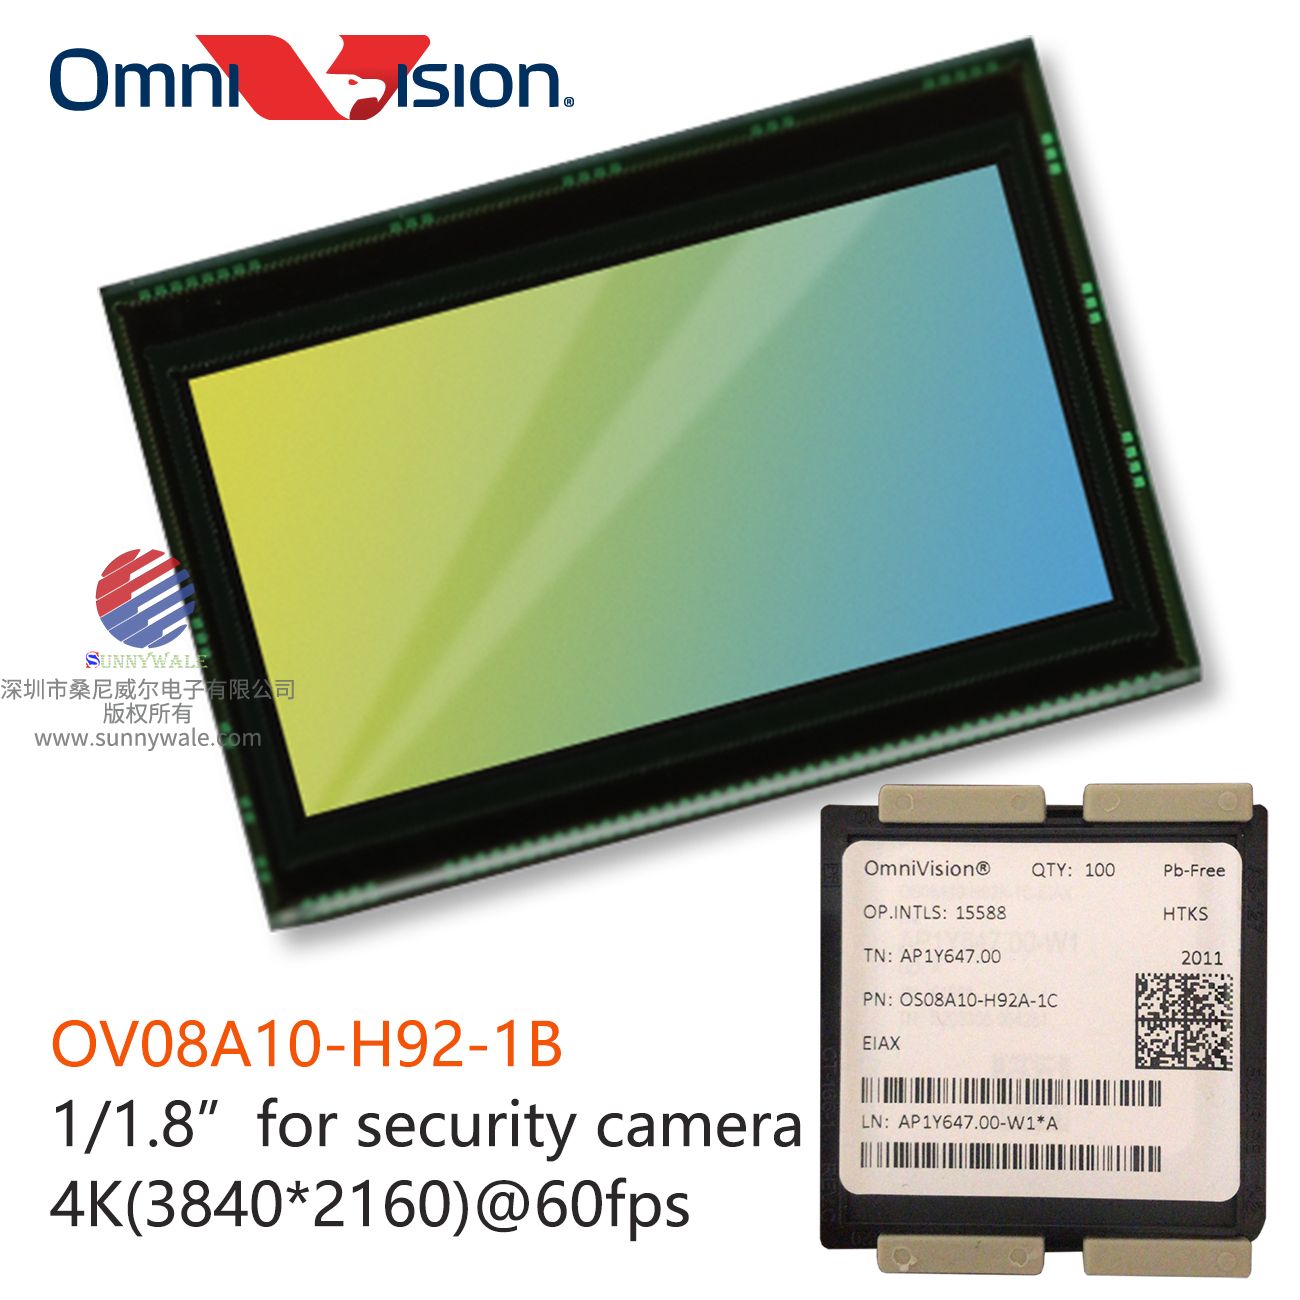  OmniVision OS08A10-H92A-1B/1C   1/1.8 color CMOS